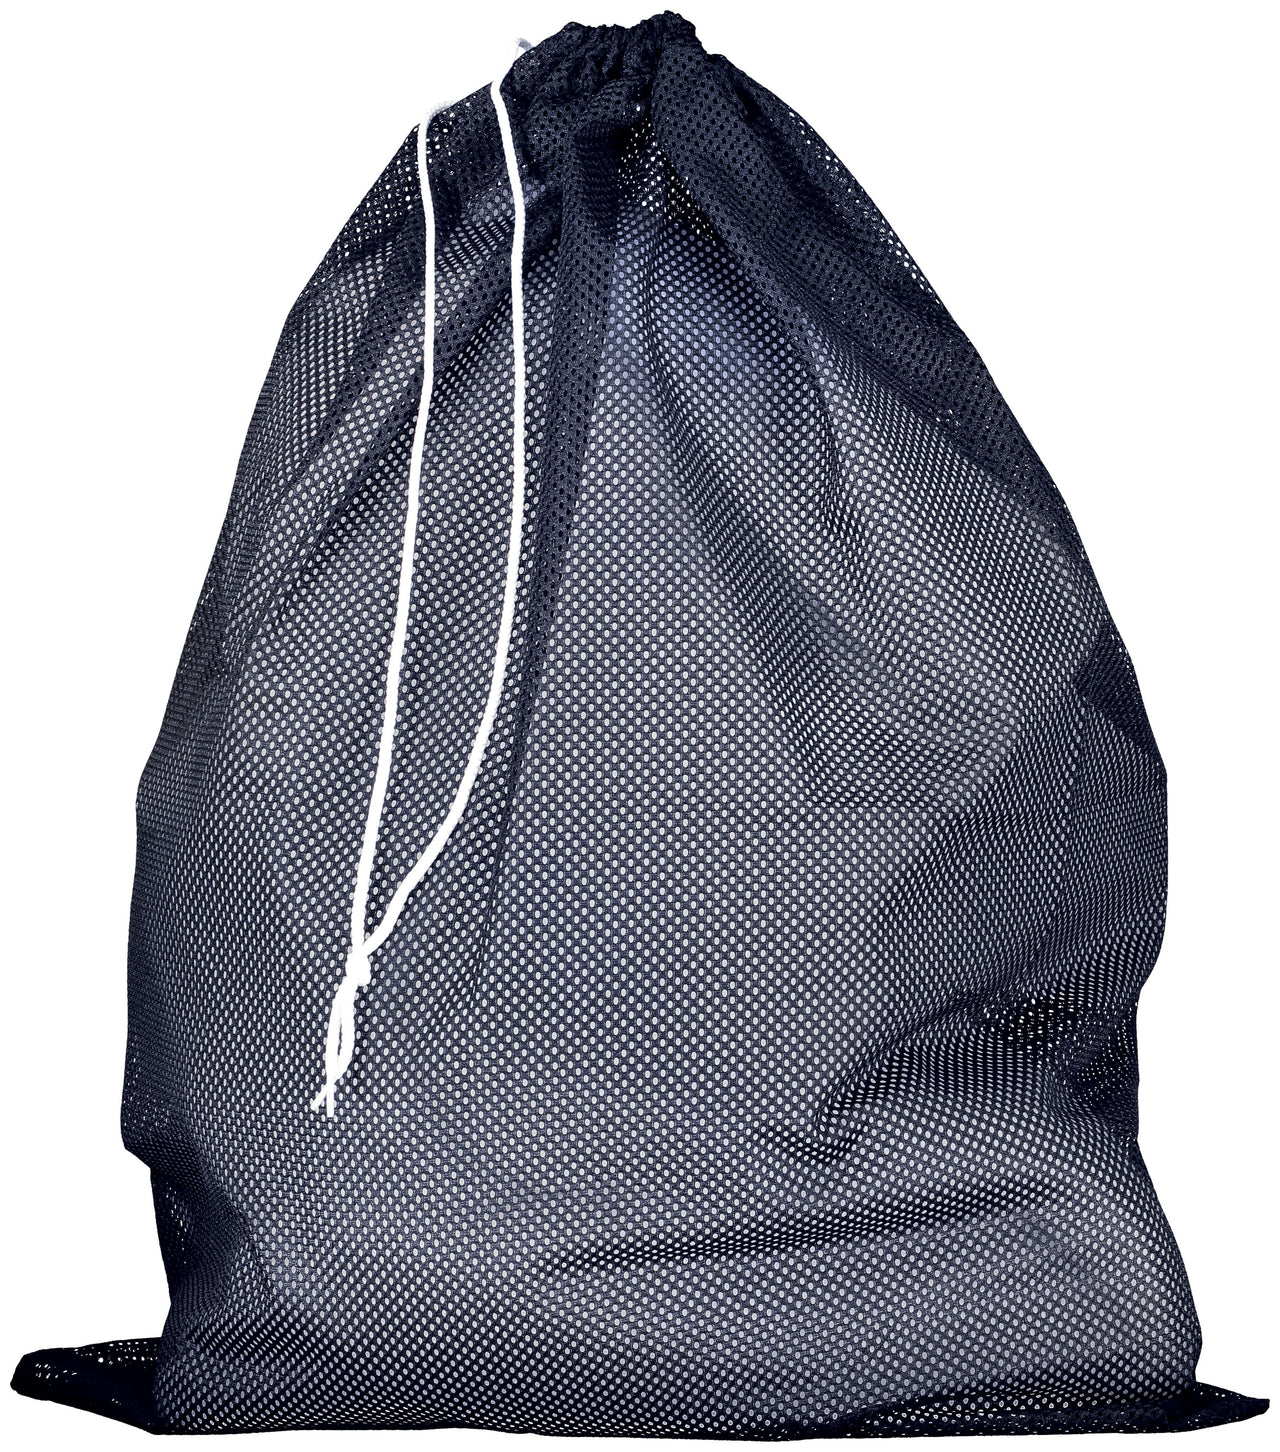 Mesh Laundry Bag - MLB6B0